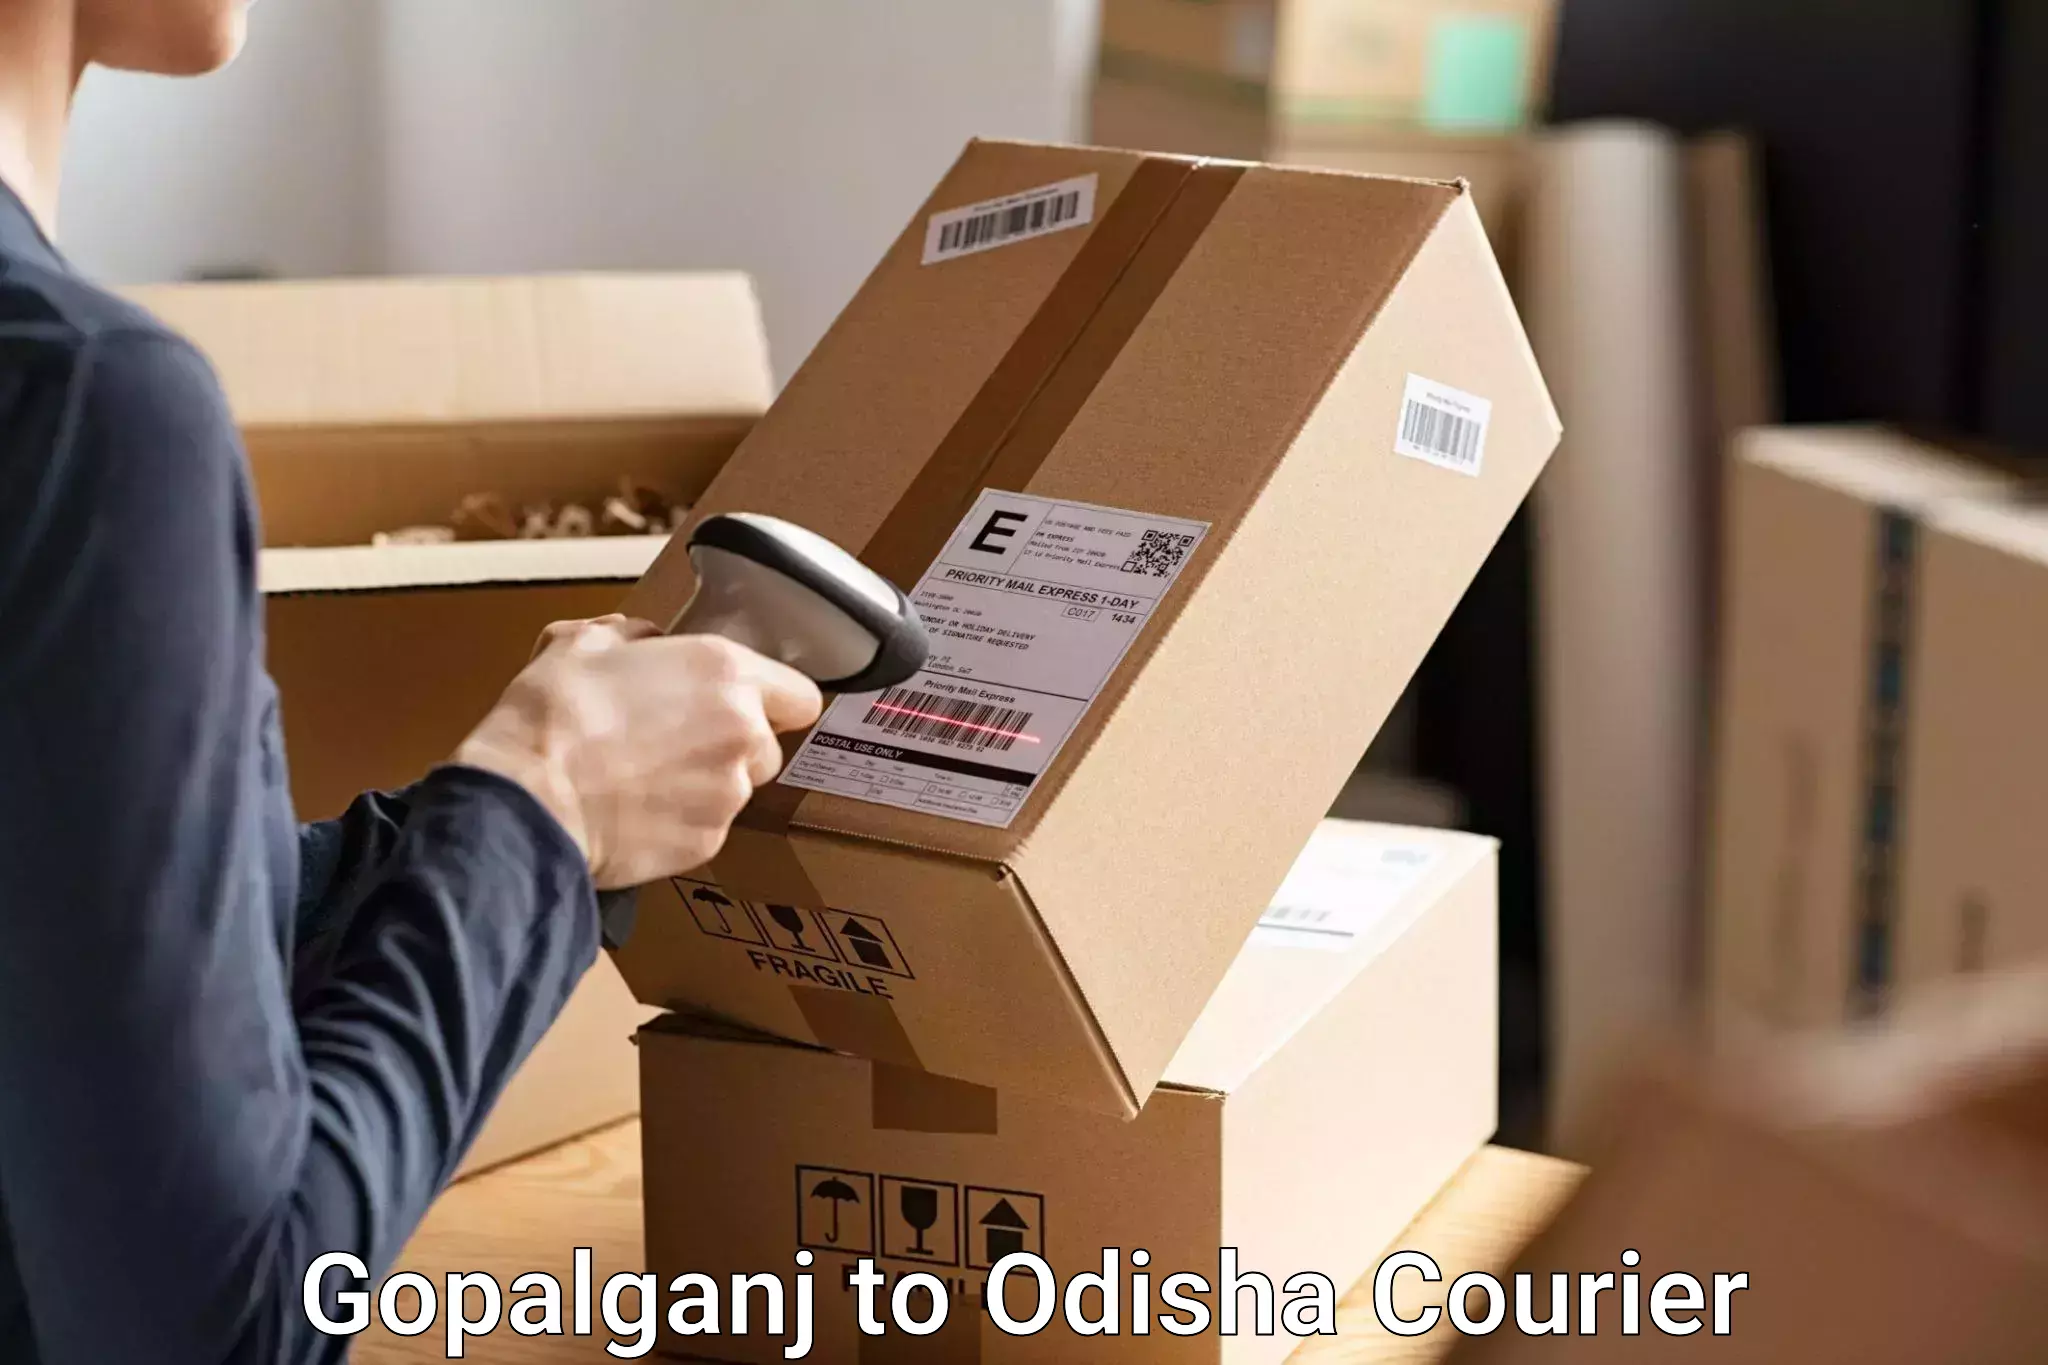 Luggage delivery system Gopalganj to Keonjhar